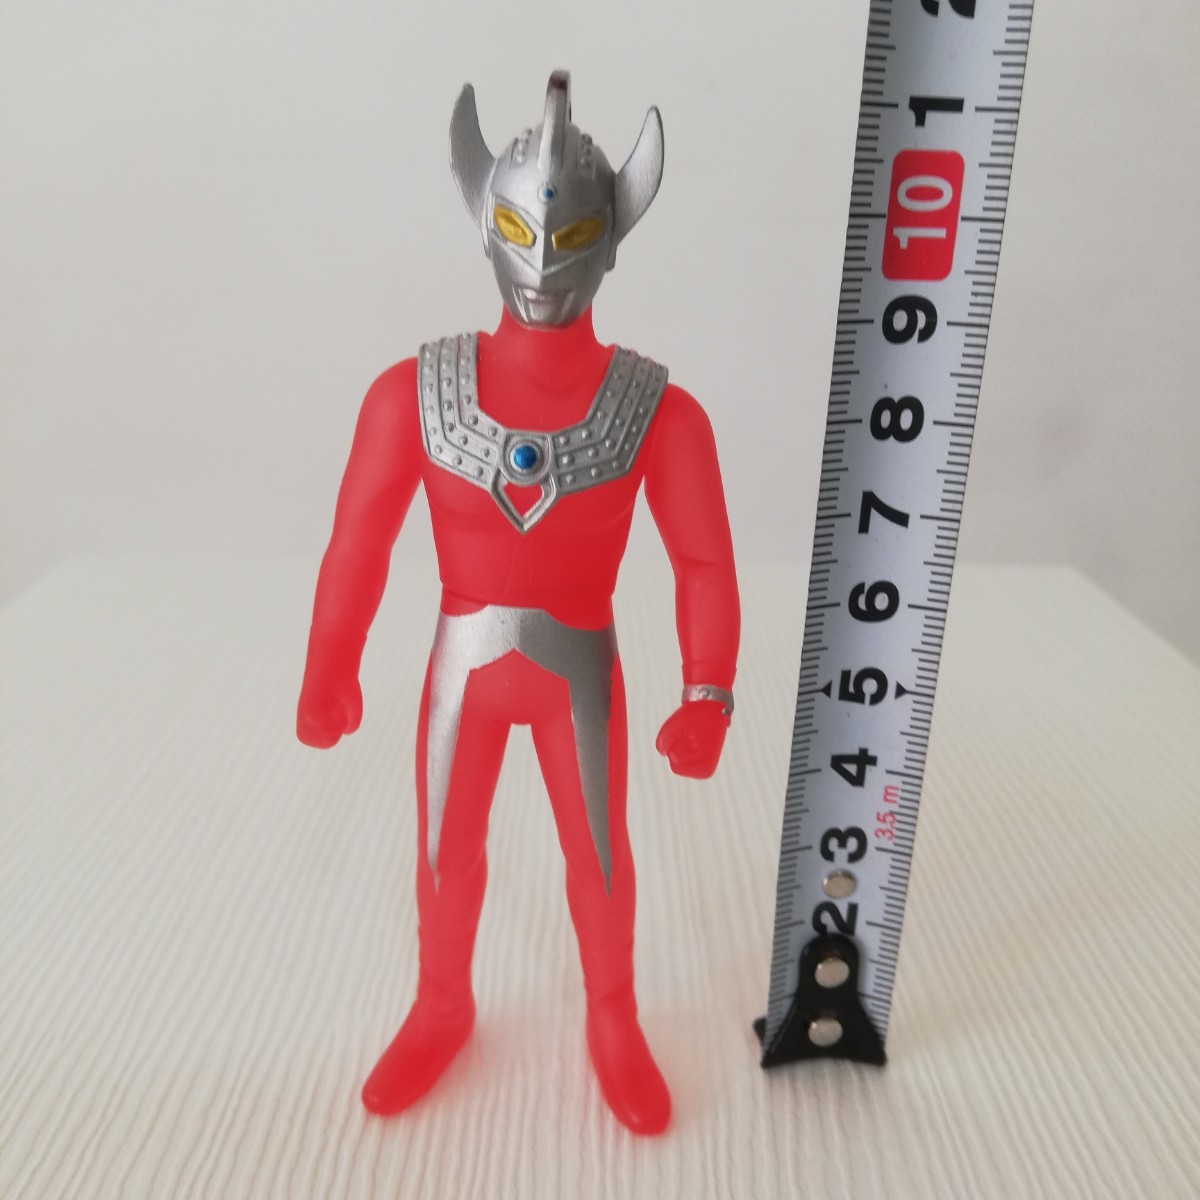 2002 год негодный номер Ultraman Taro прозрачный красный sofvi высота 11.5cm [ sofvi кукла фигурка ]